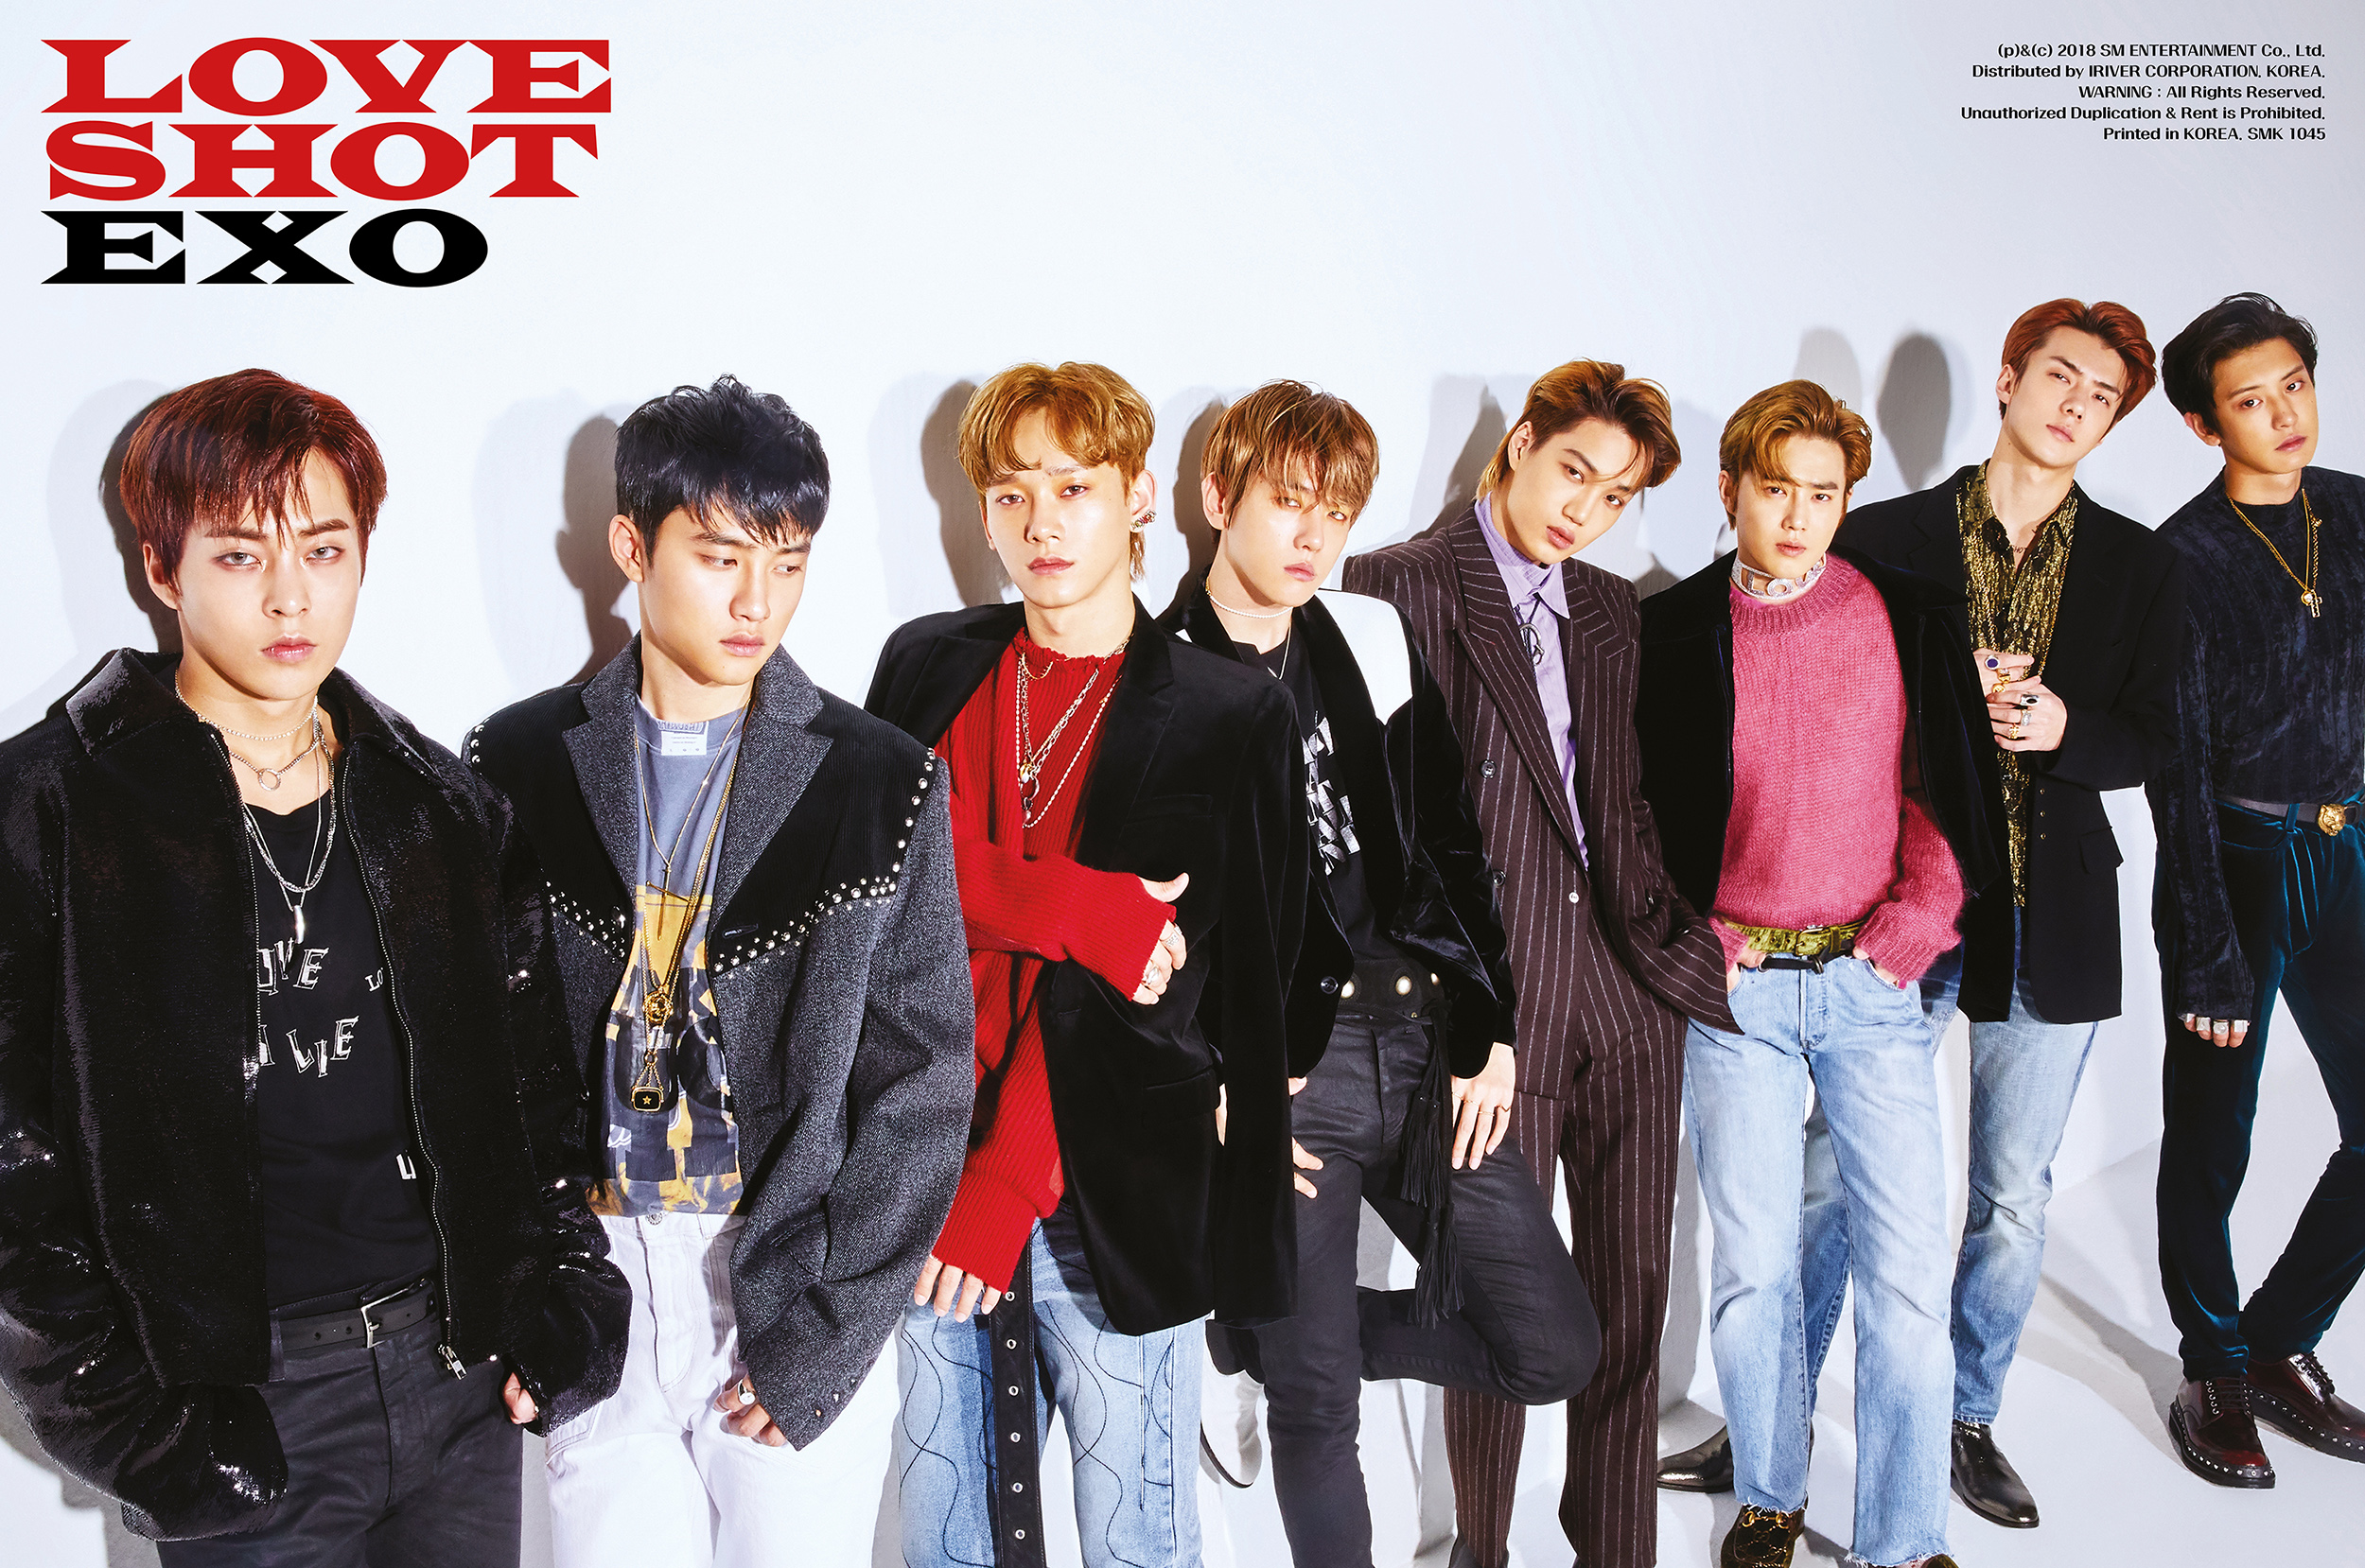 不愧是 EXO！改版专辑〈LOVE SHOT〉横扫 60 国 iTunes 榜首 - KSD 韩星网 (KPOP)